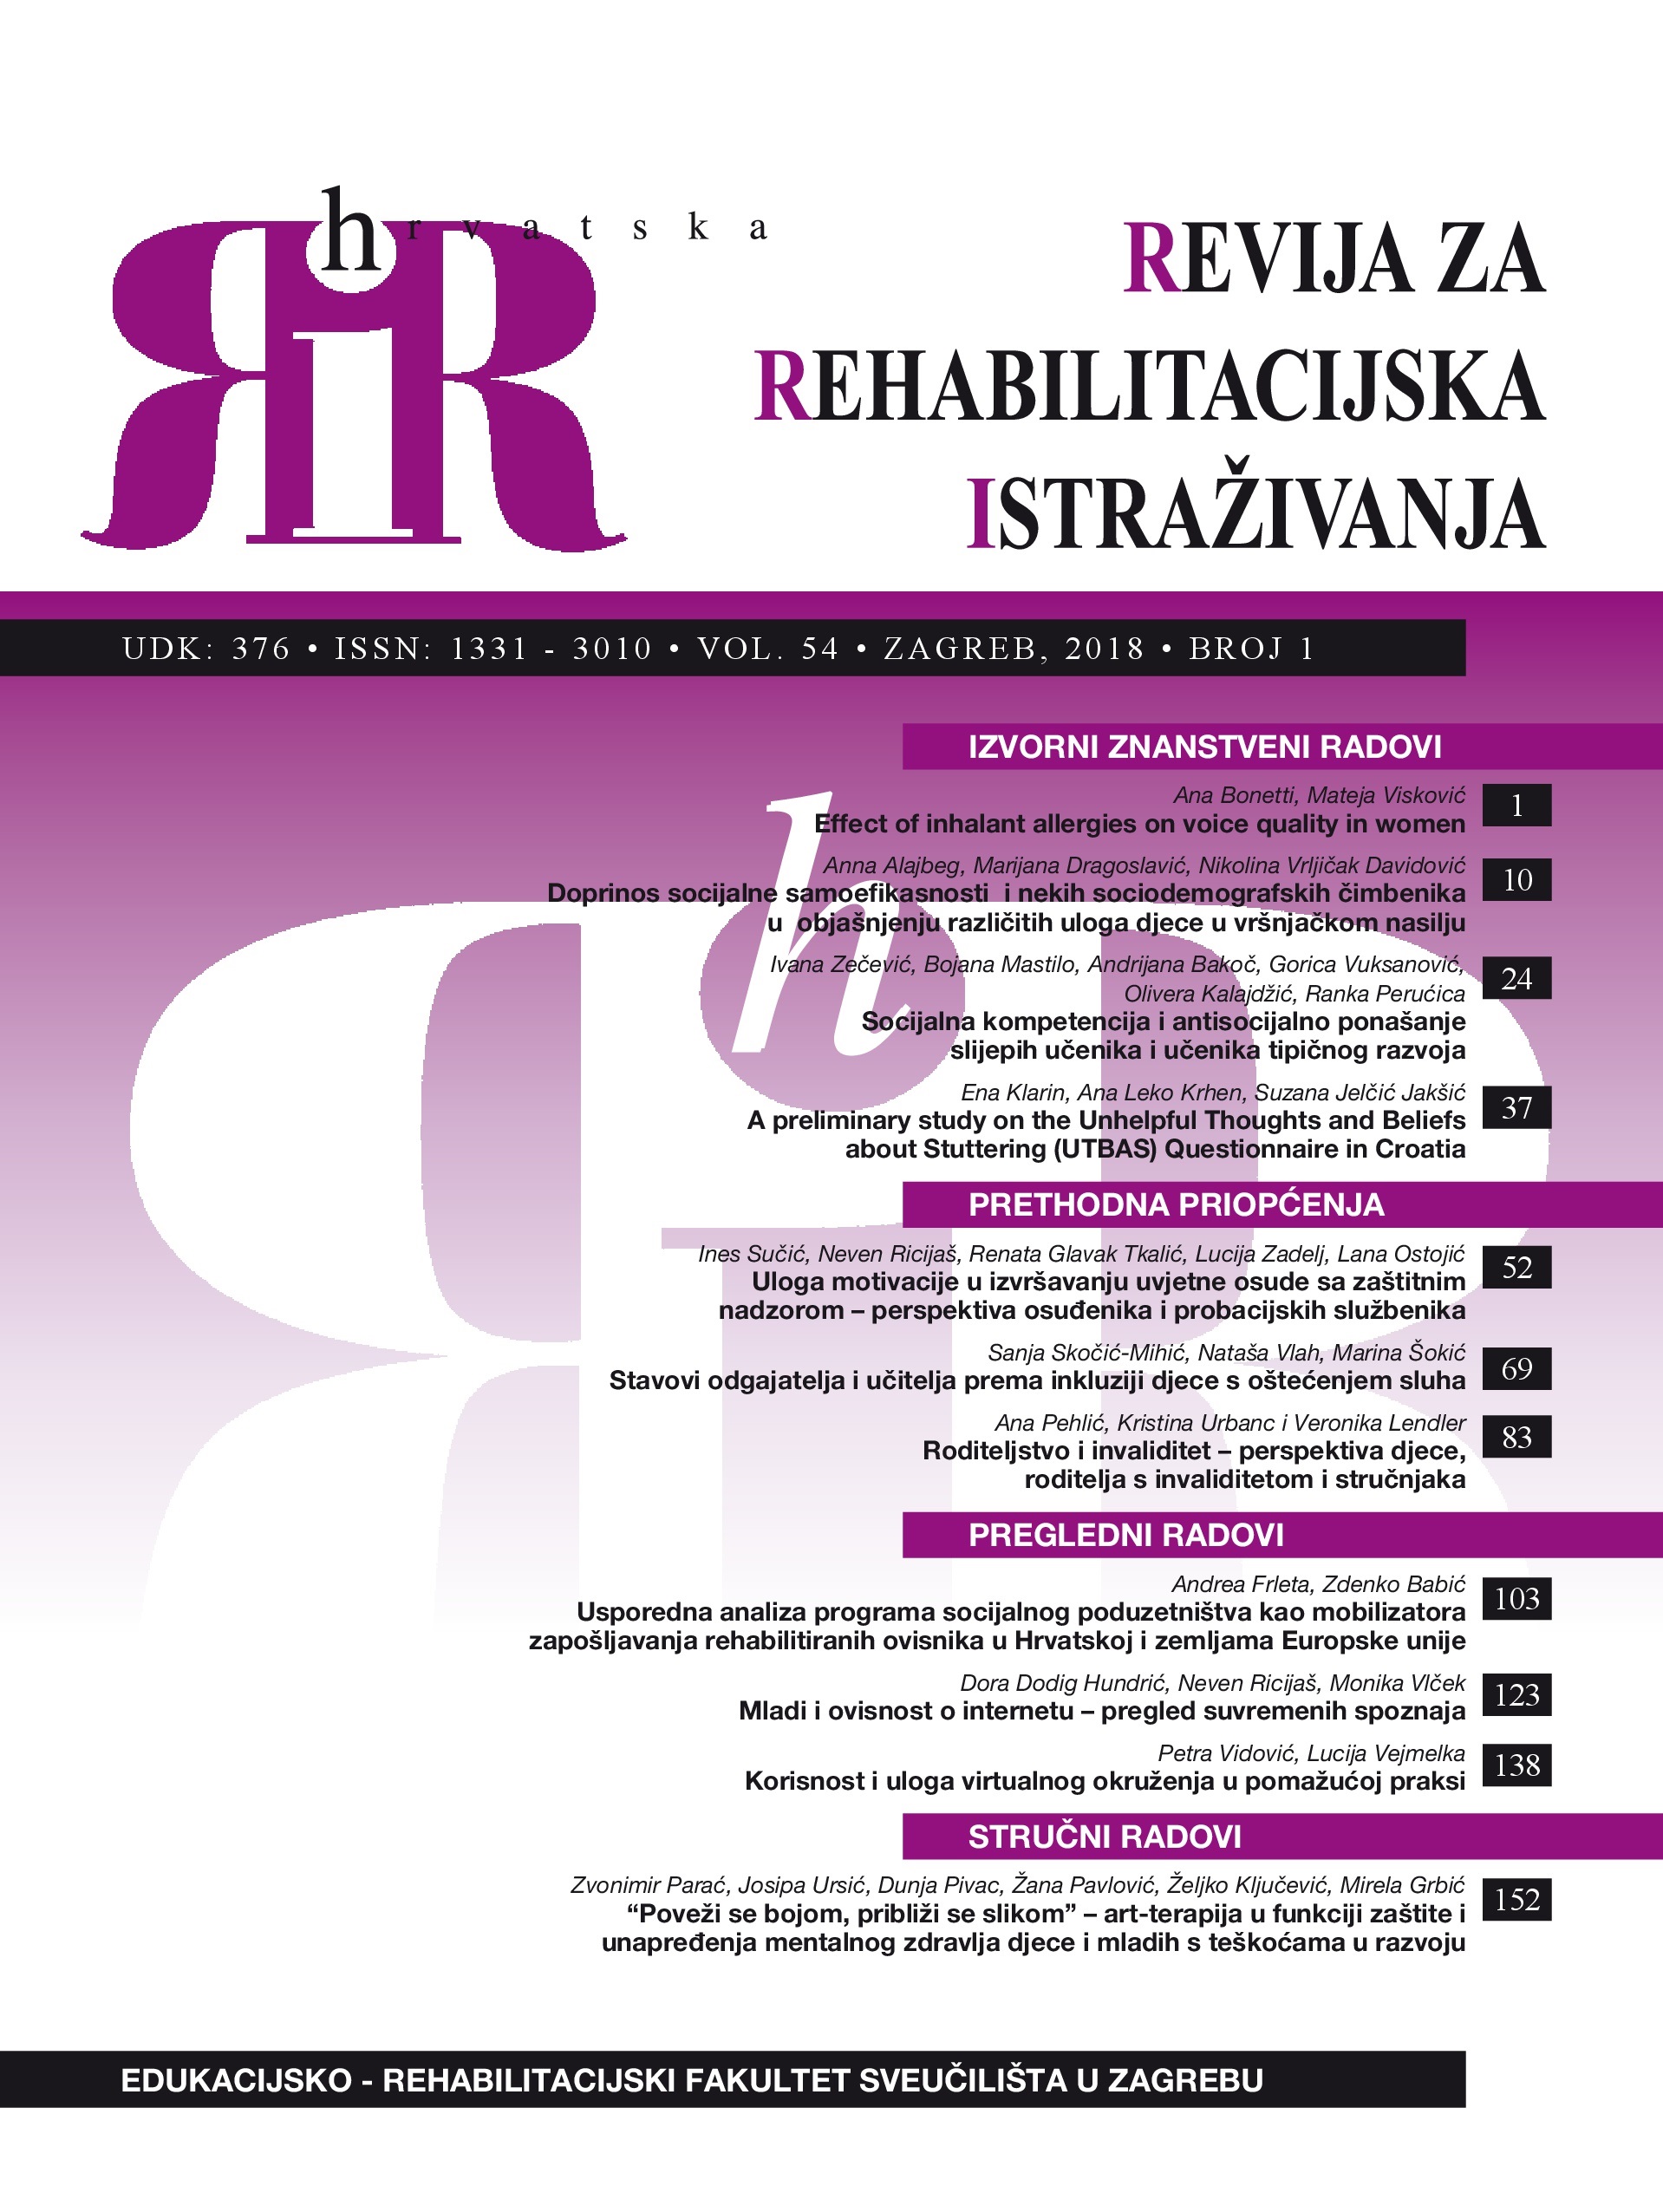 Usporedna analiza programa socijalnog poduzetništva kao mobilizatora zapošljavanja rehabilitiranih ovisnika u Hrvatskoj i zemljama Europske unije